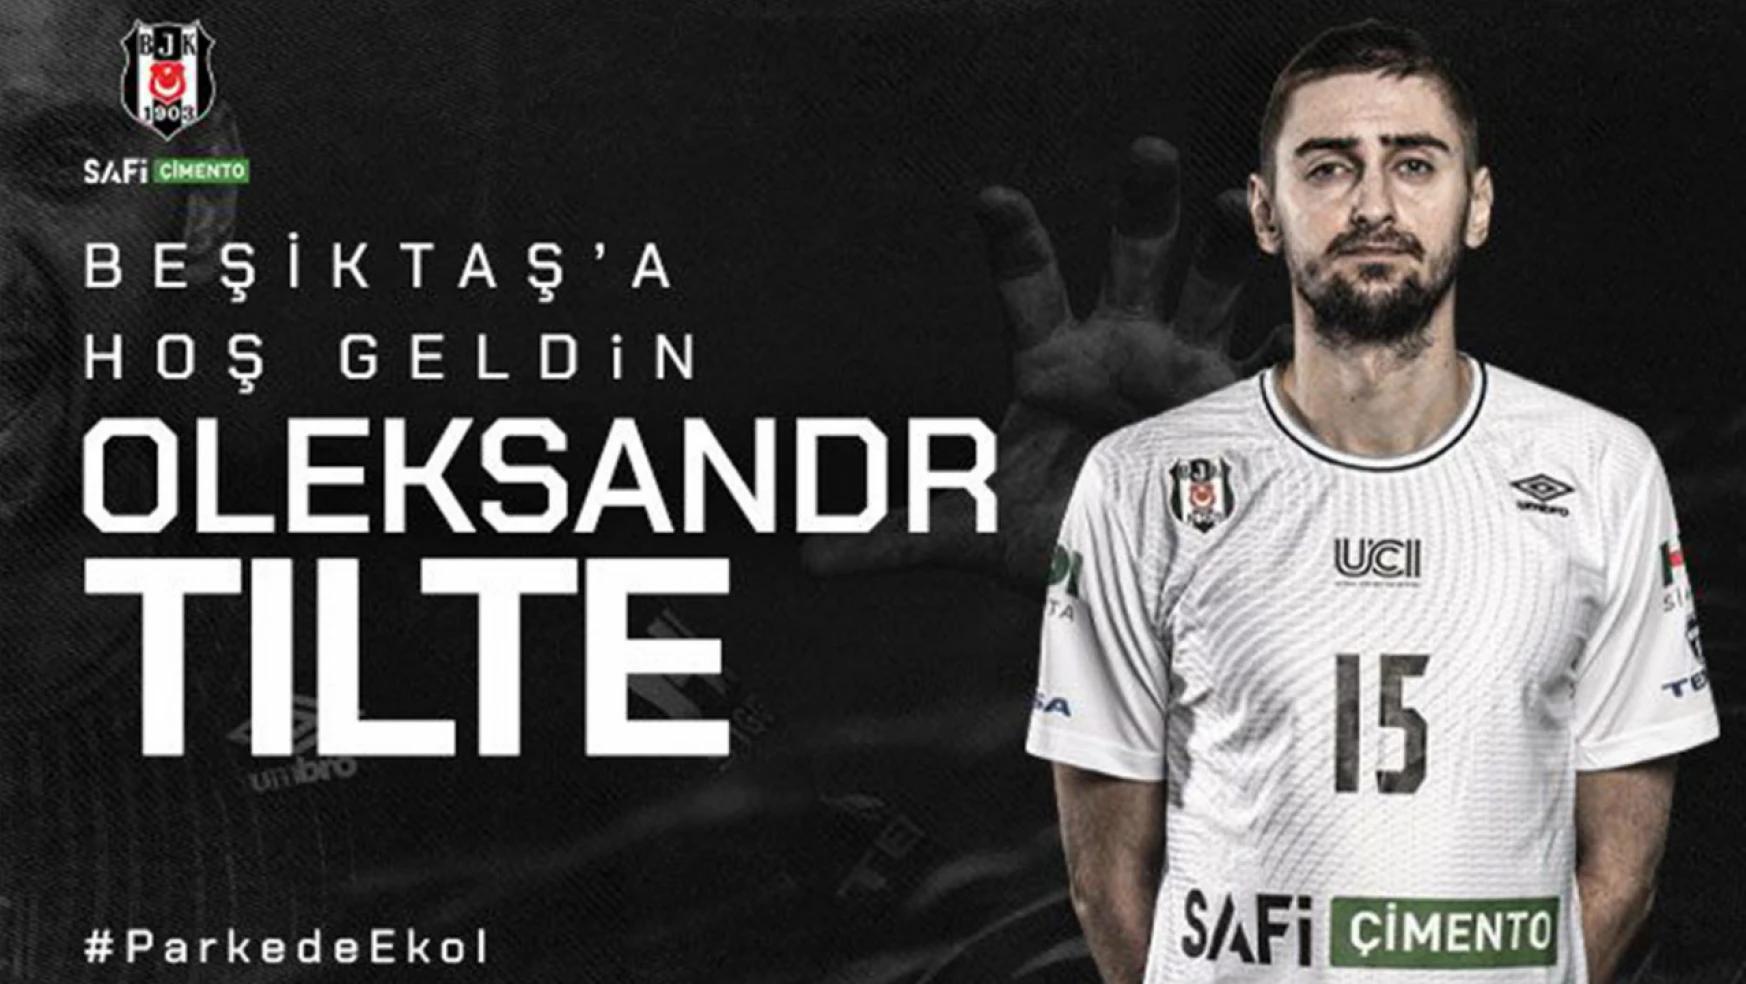 Oleksandr Tilte Beşiktaş Safi Çimento'da